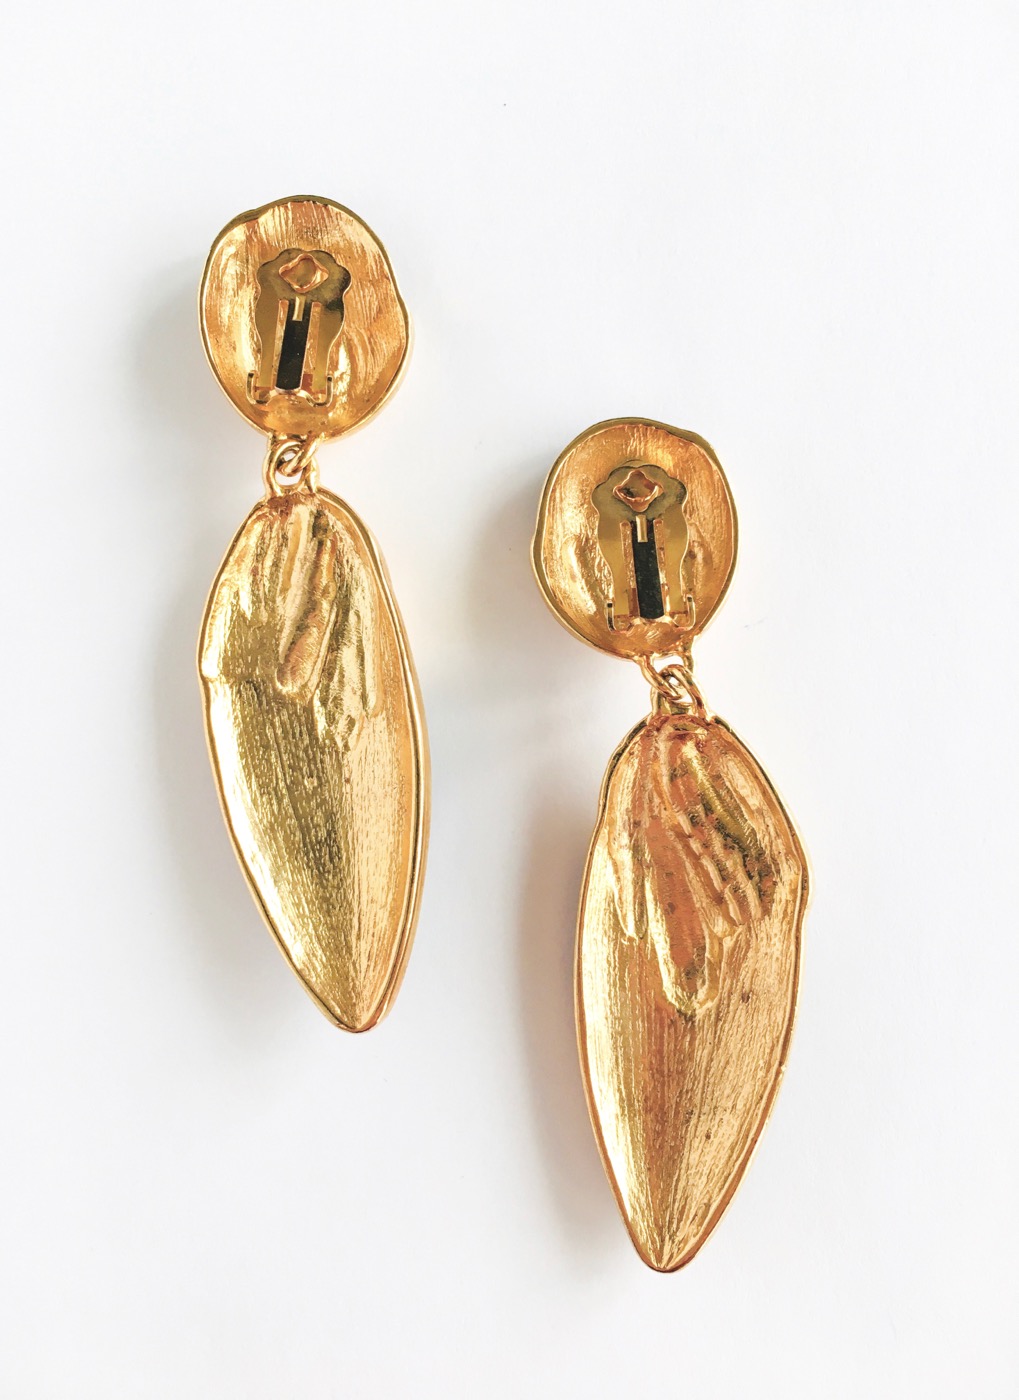 80s gold + black rhinestone dangle earrings